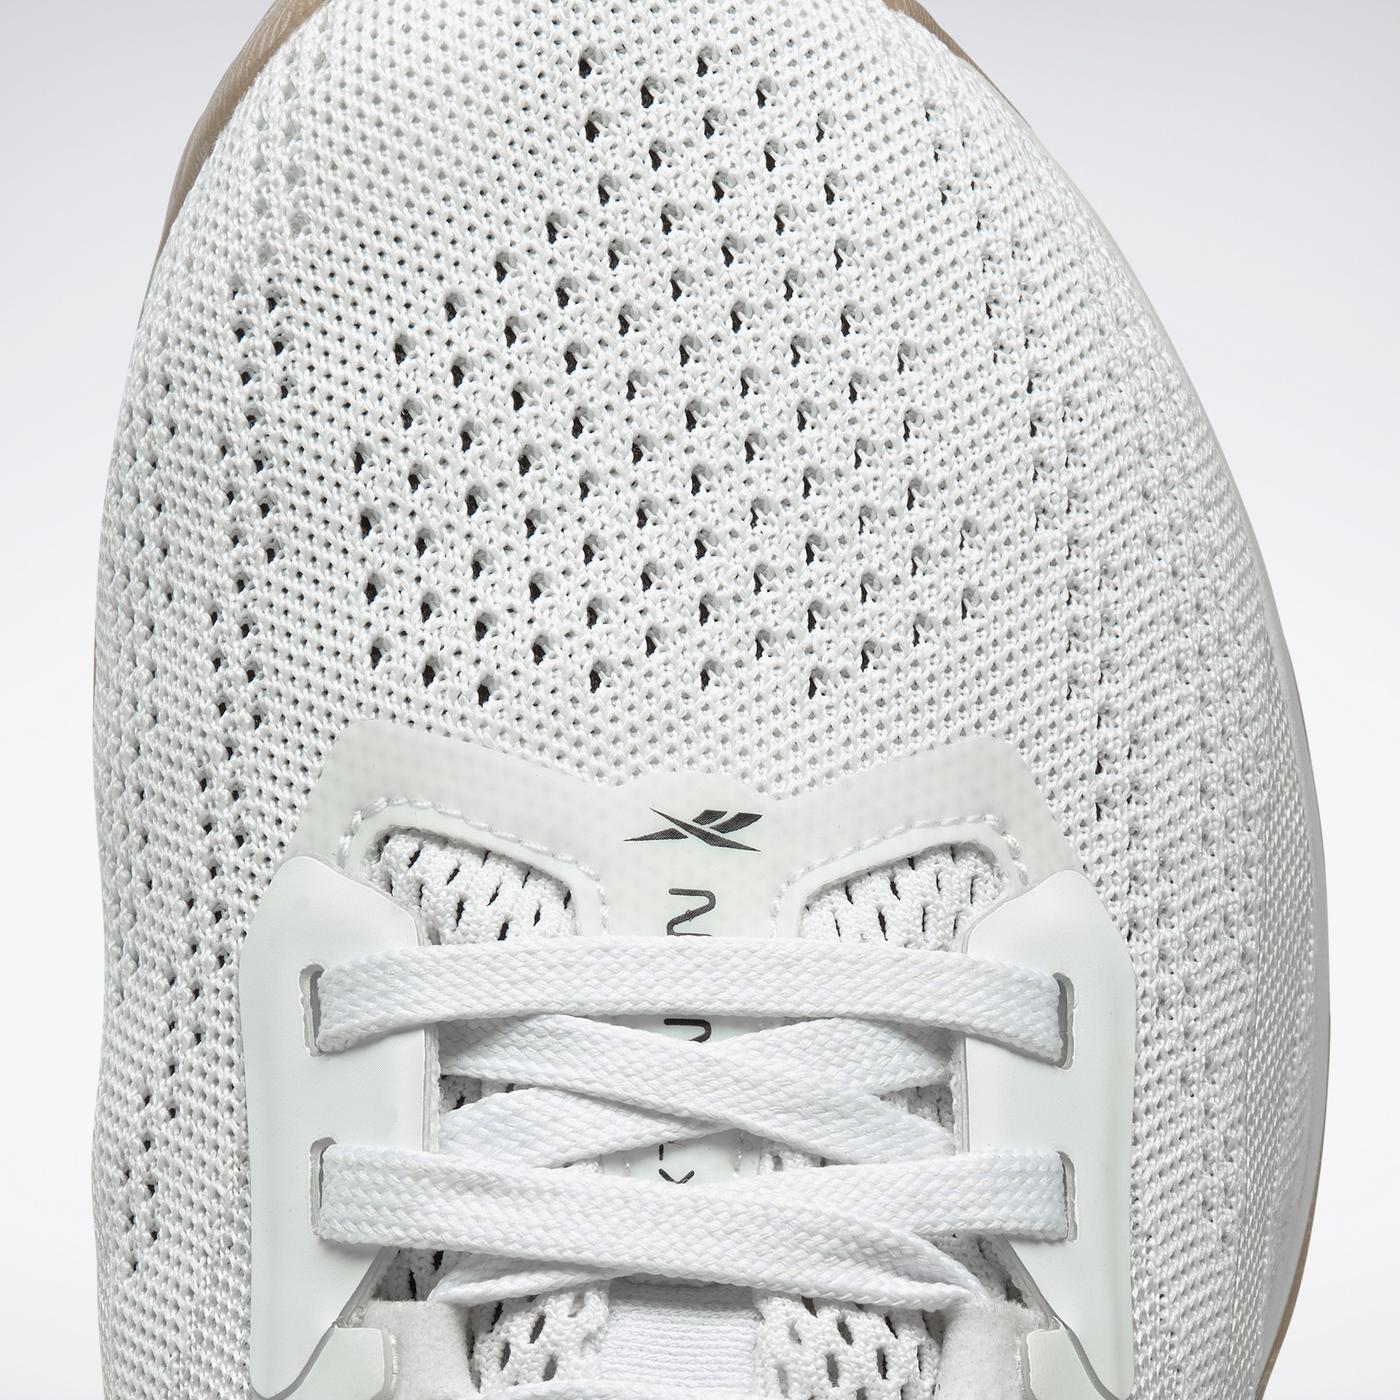 Reebok Nano X1 Erkek Beyaz Spor Ayakkabı